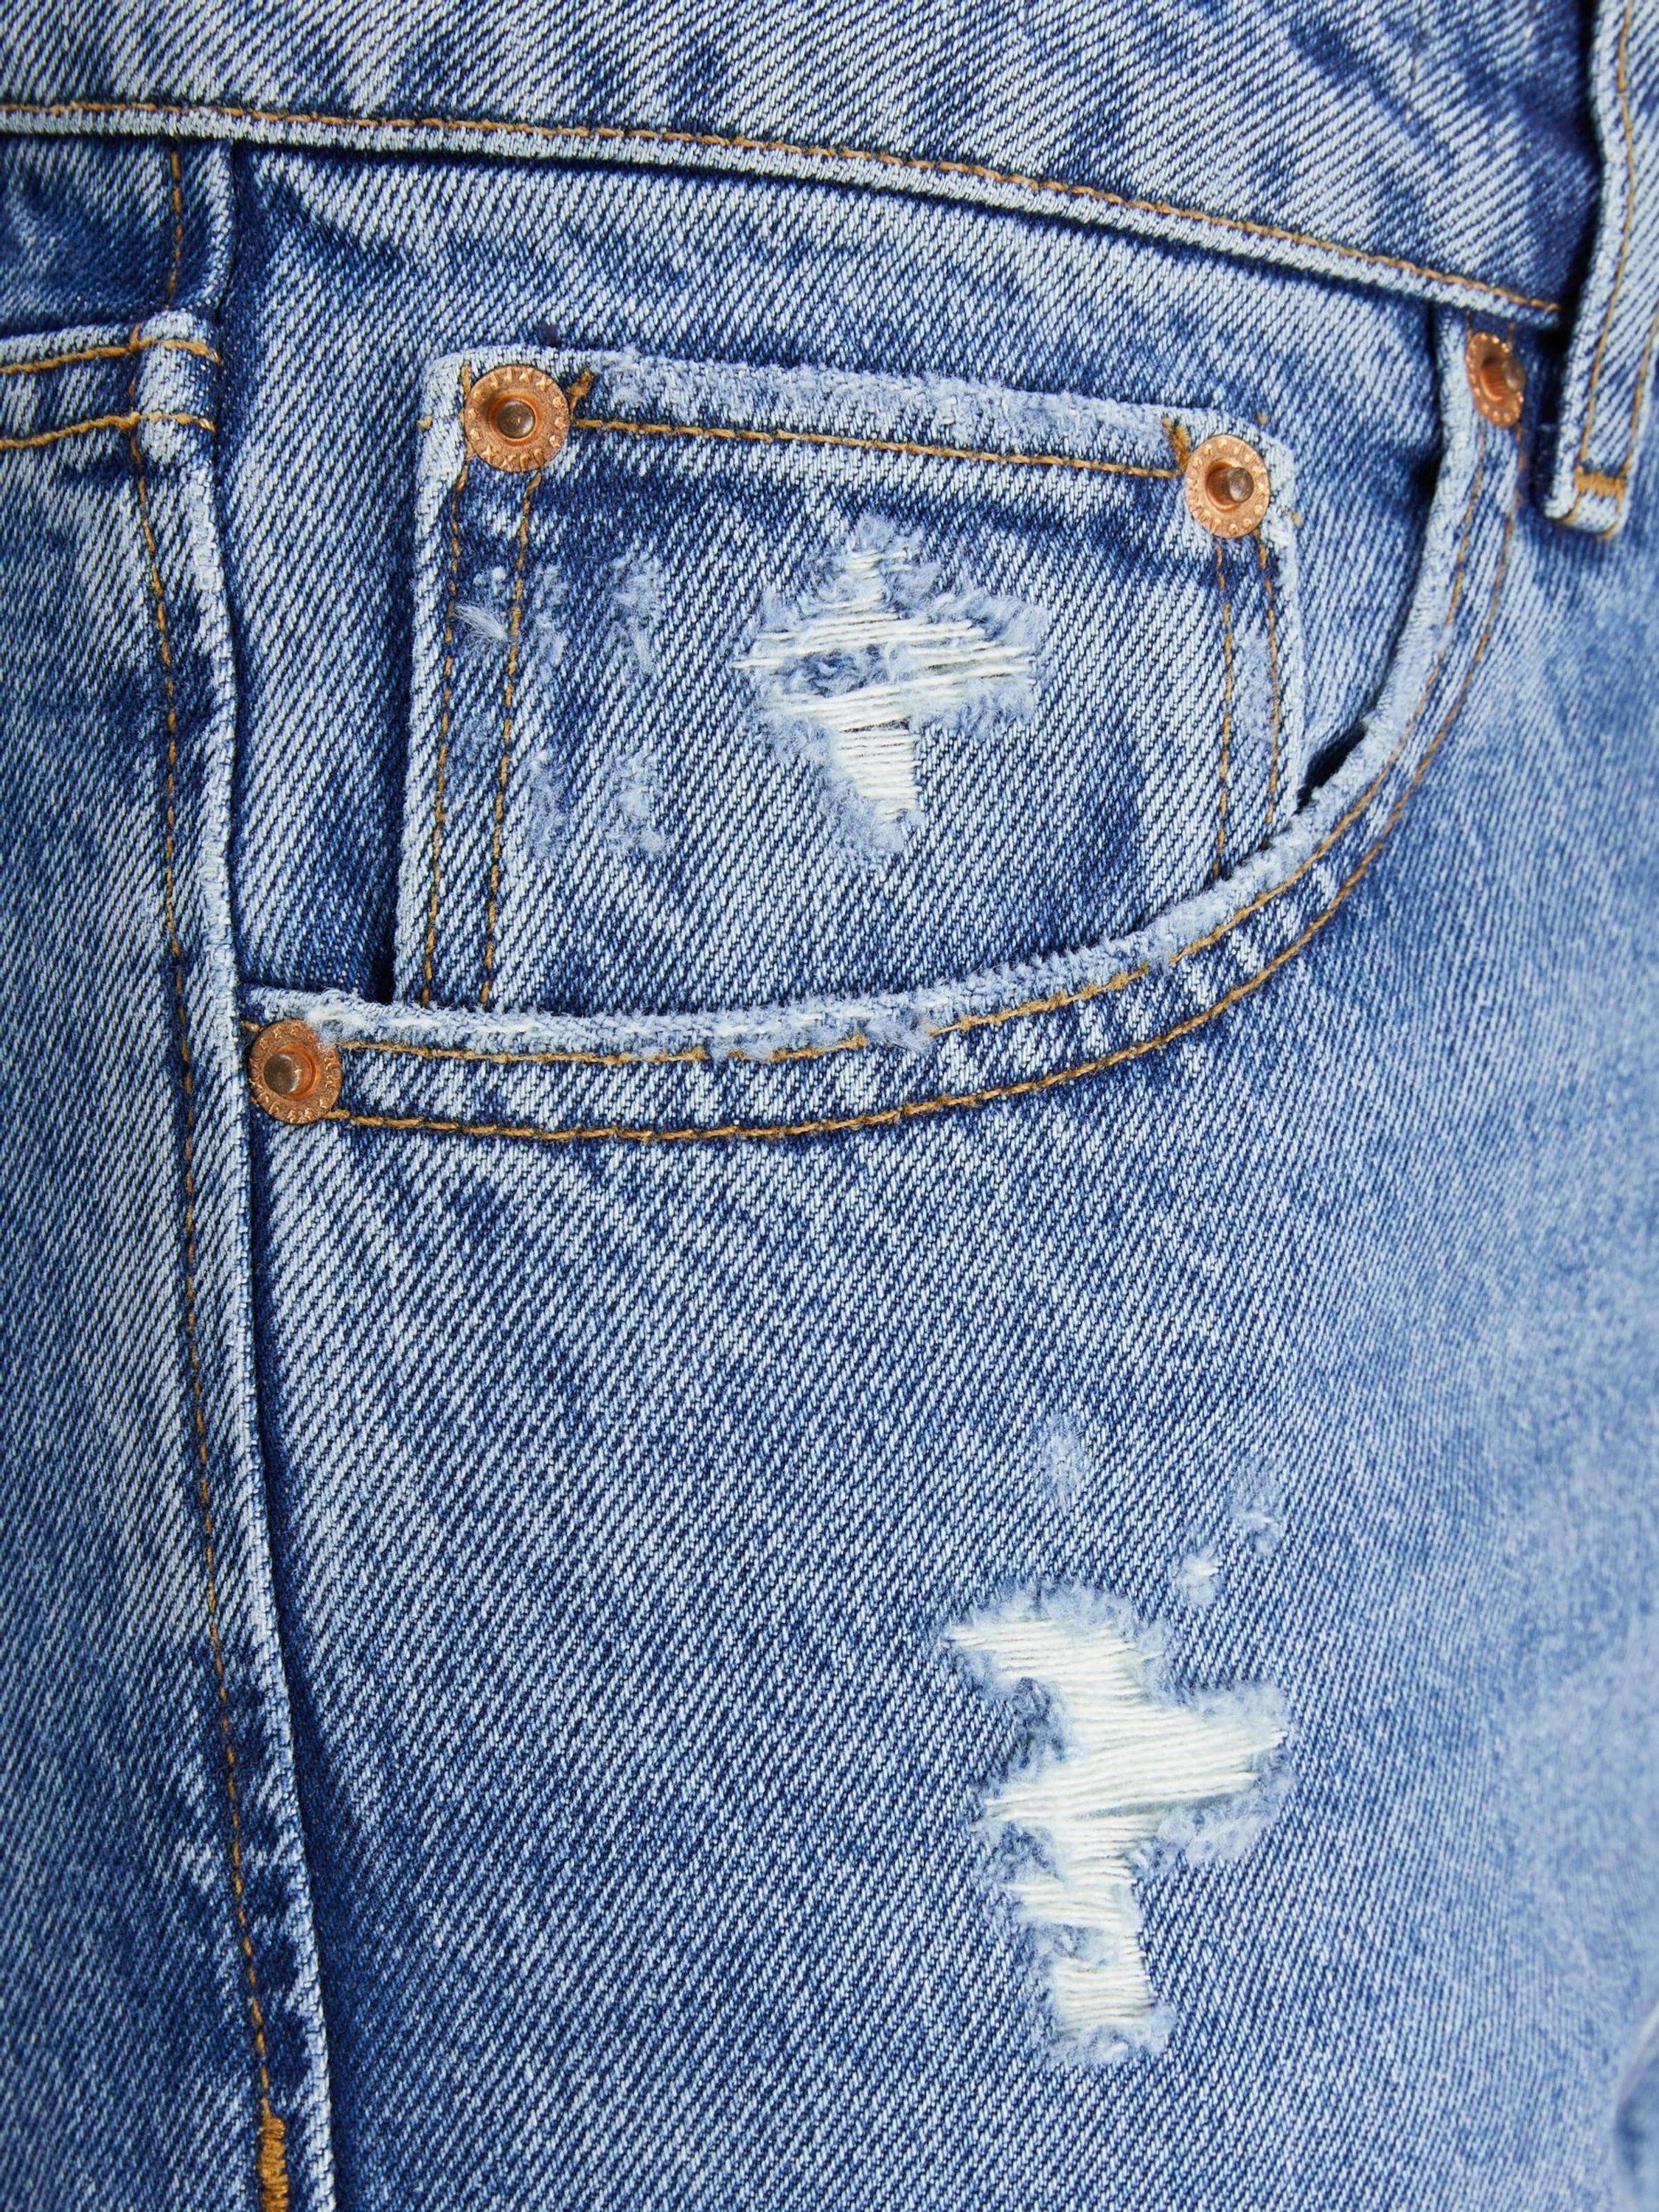 (1-tlg) SEVILLE Plain/ohne Details, JJXX Jeans Weite Weiteres Detail